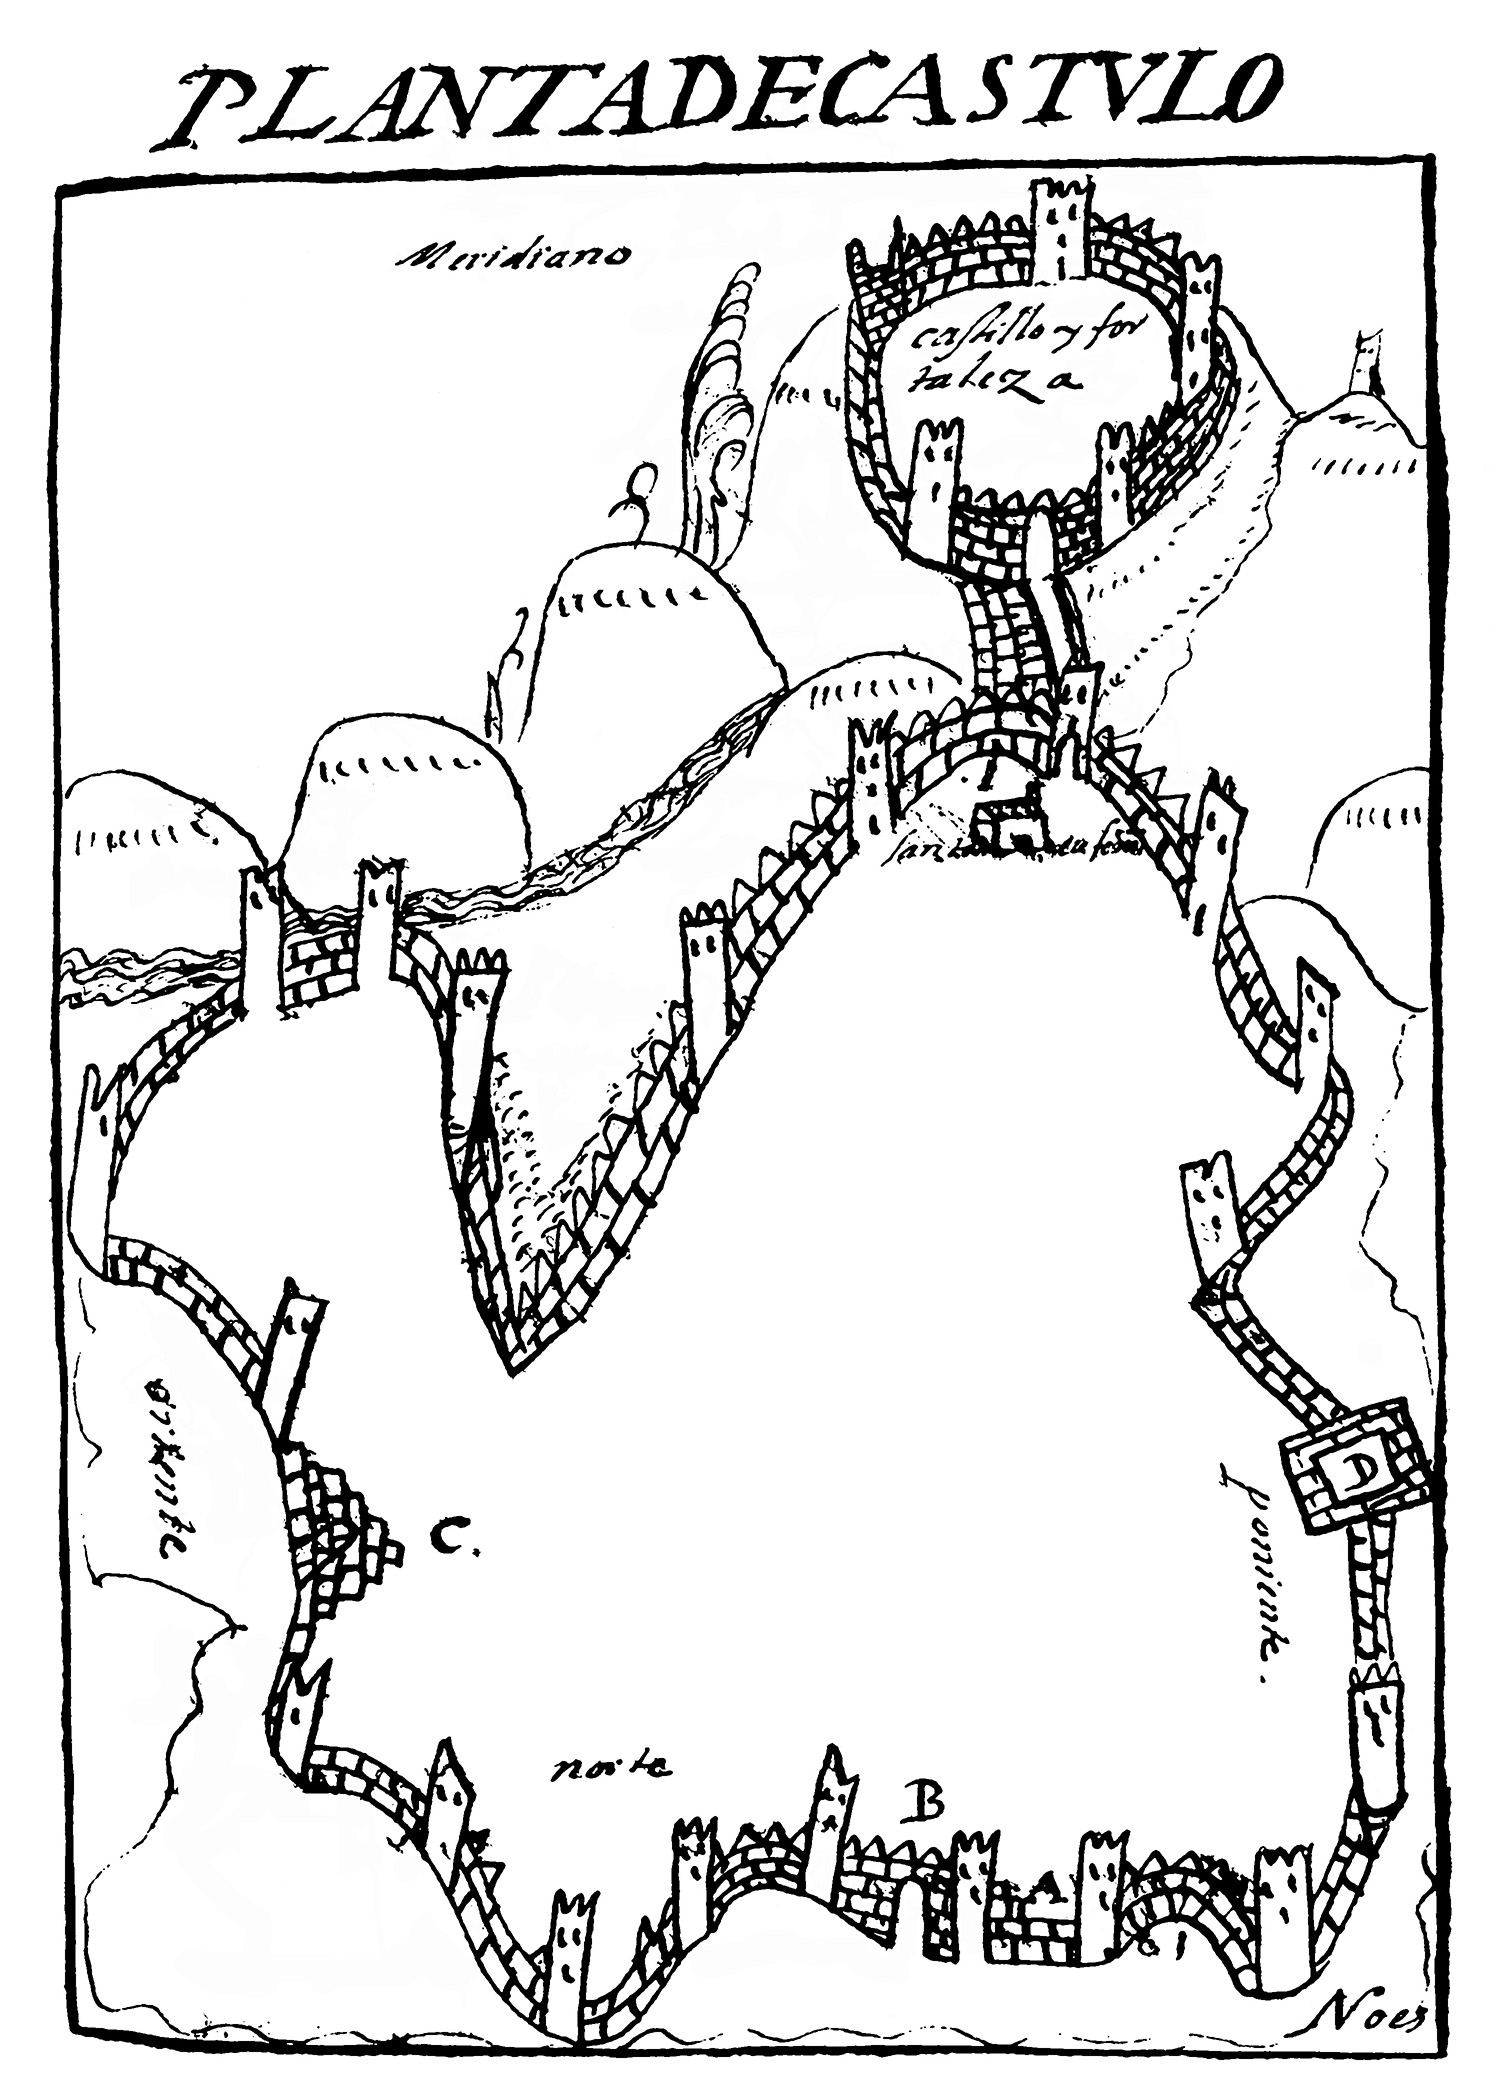 Plano de Cástulo elaborado por Gregorio López Pinto en 1656